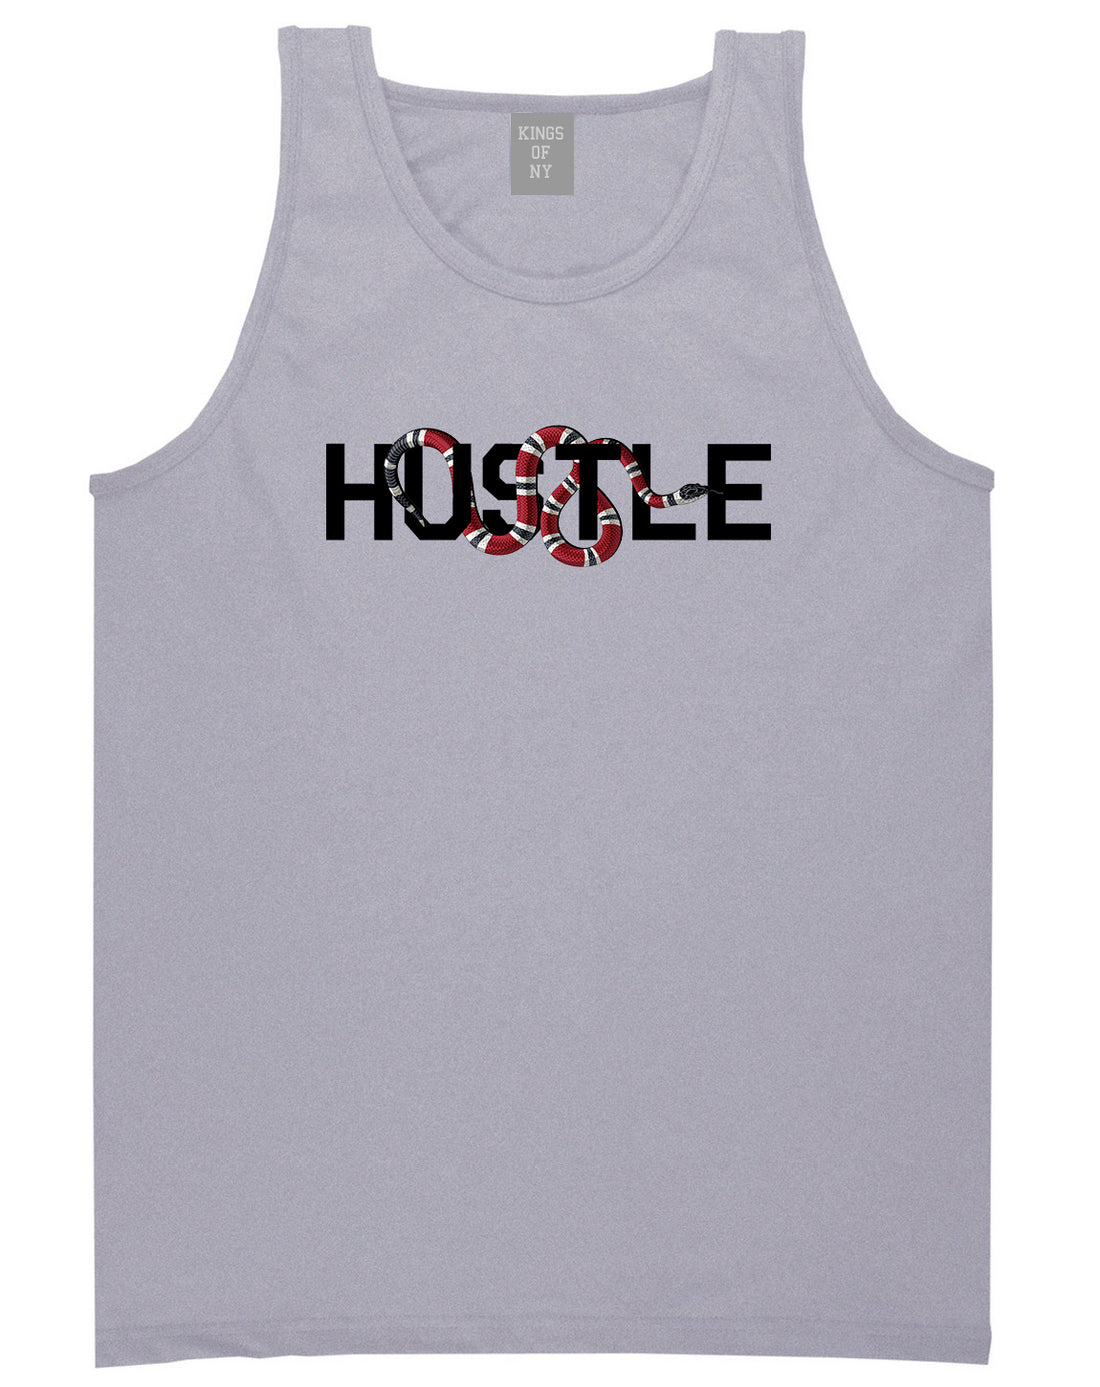 Hustle Snake Mens Tank Top Shirt Grey by Kings Of NY